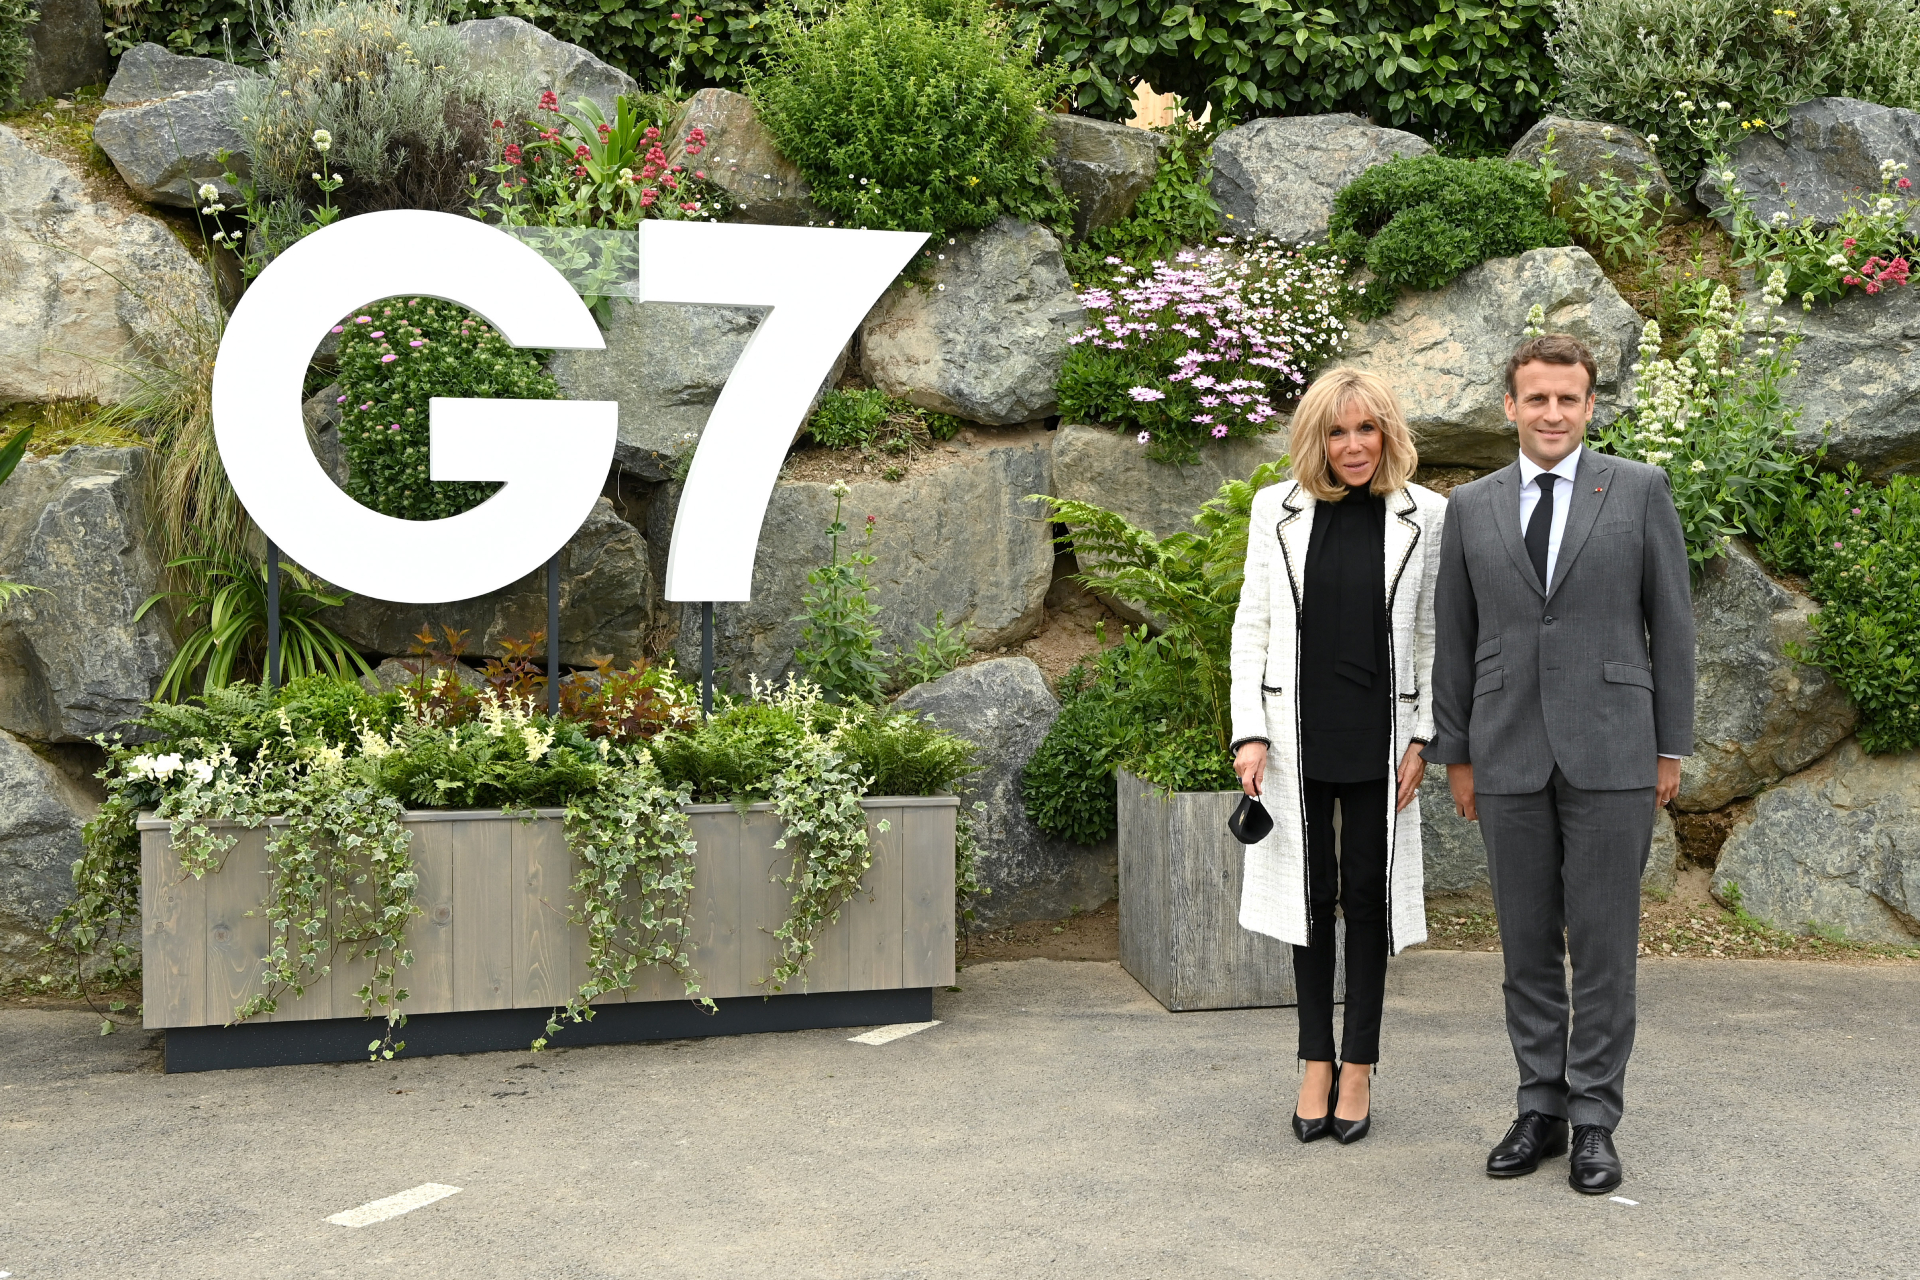 Брижит Макрон в жакете Chanel в отеле Carbis Bay перед саммитом G7, 11 июня